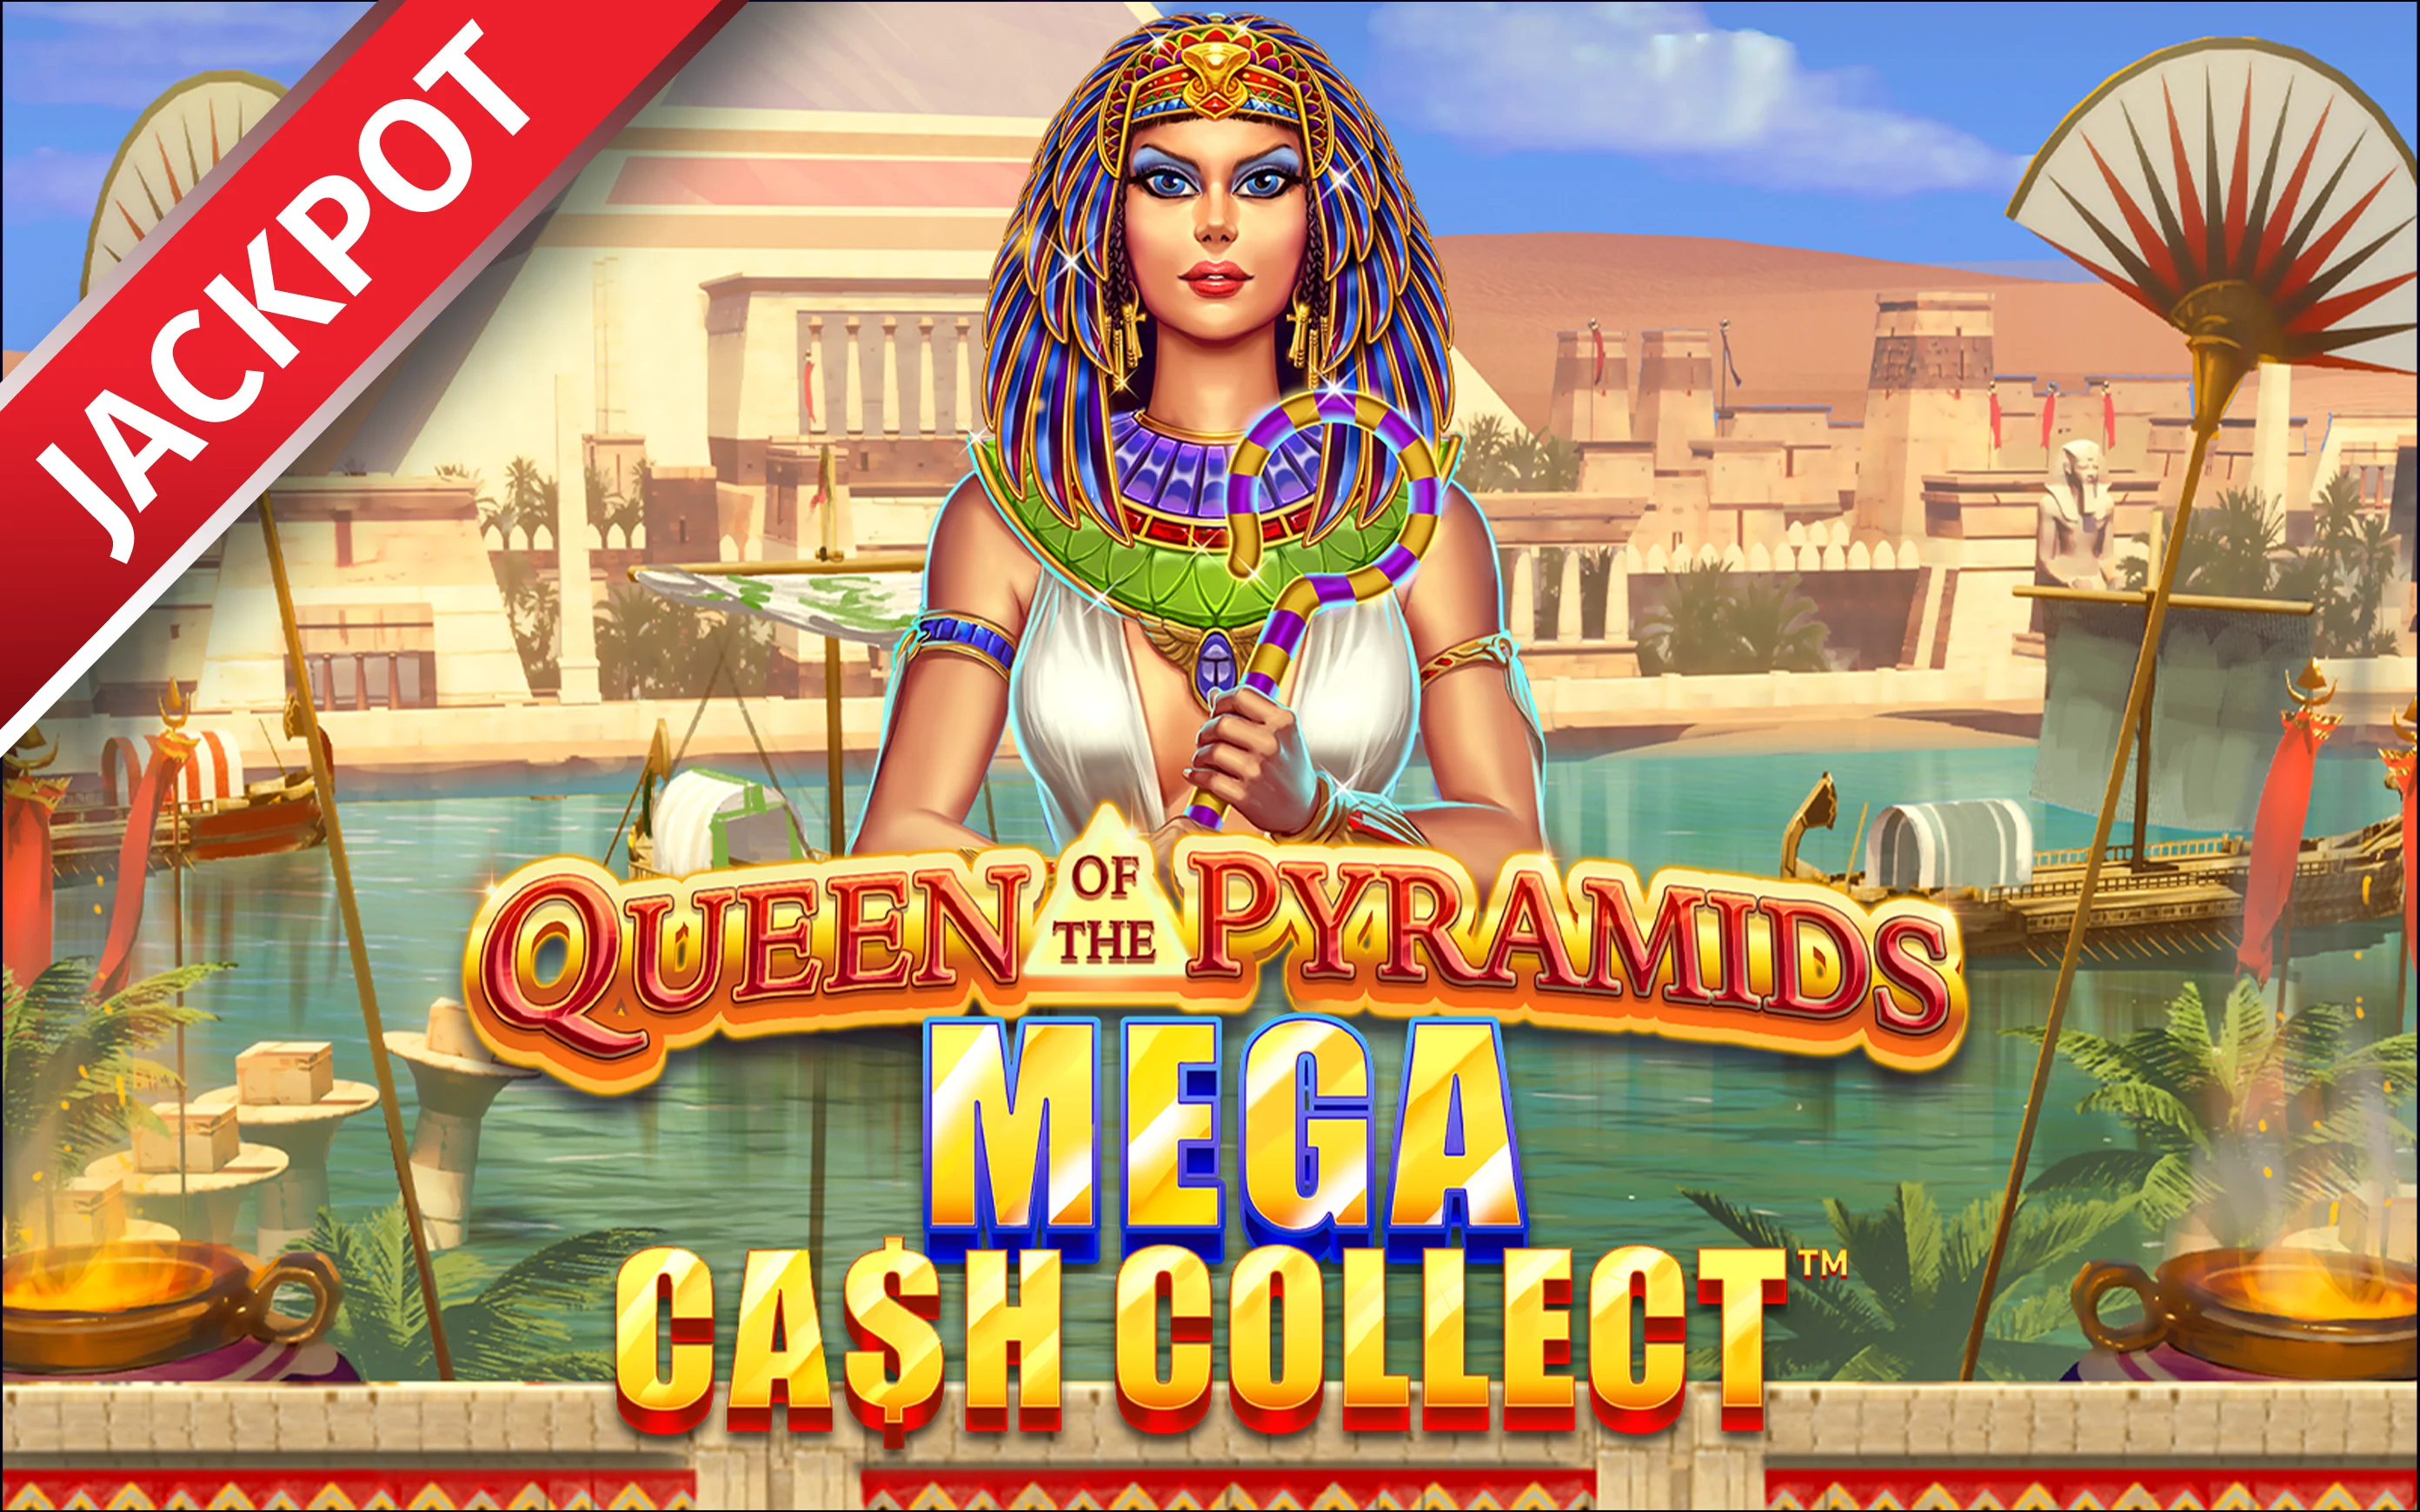 Gioca a Queen of the Pyramids: Mega Cash Collect™ sul casino online Starcasino.be